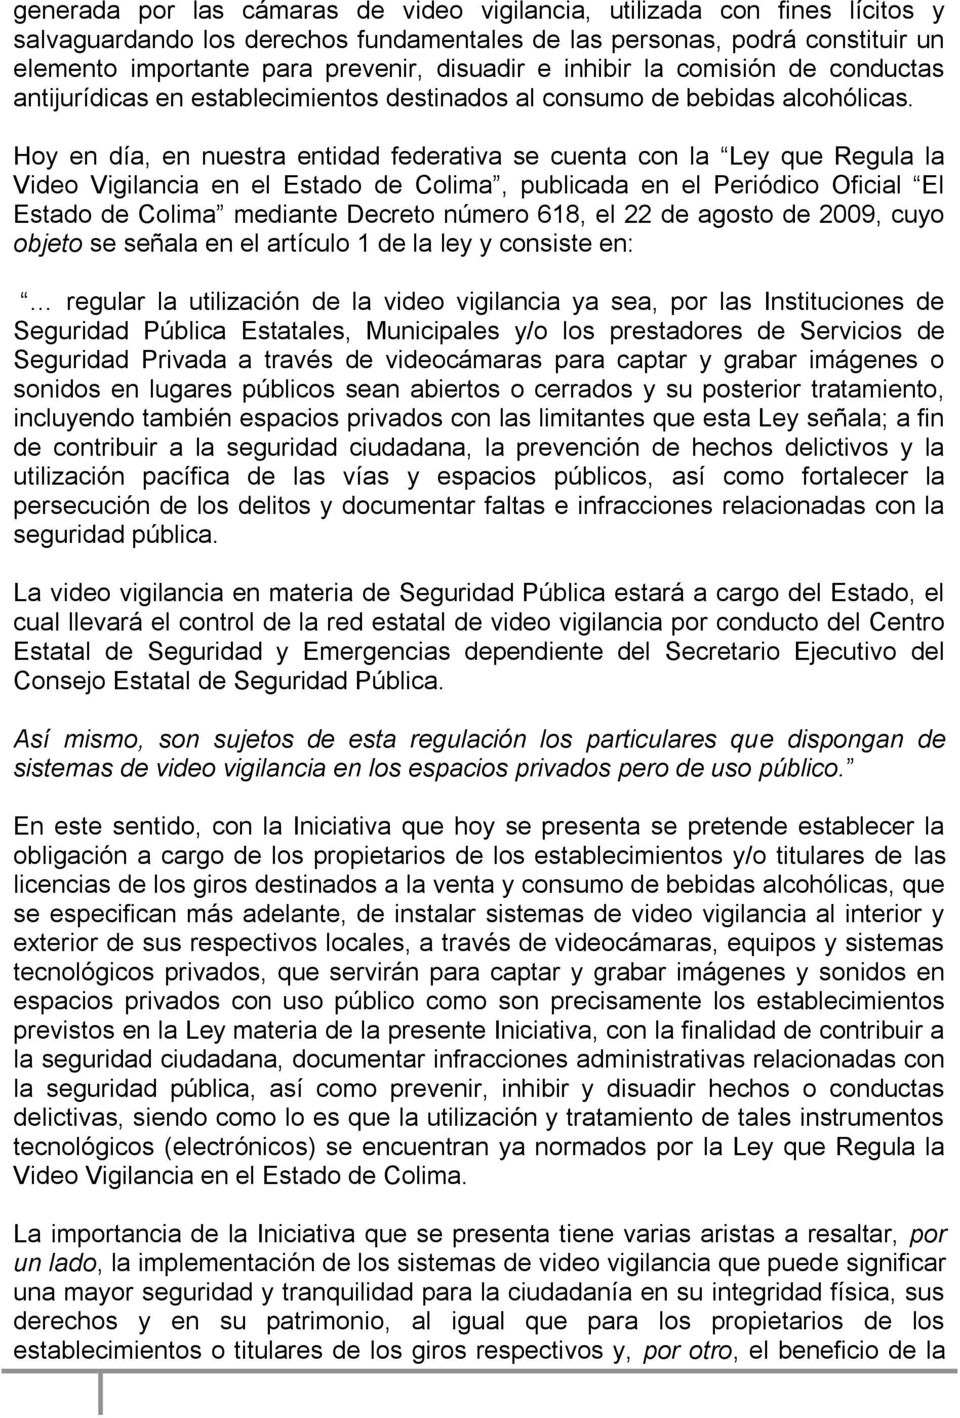 Hoy en día, en nuestra entidad federativa se cuenta con la Ley que Regula la Video Vigilancia en el Estado de Colima, publicada en el Periódico Oficial El Estado de Colima mediante Decreto número